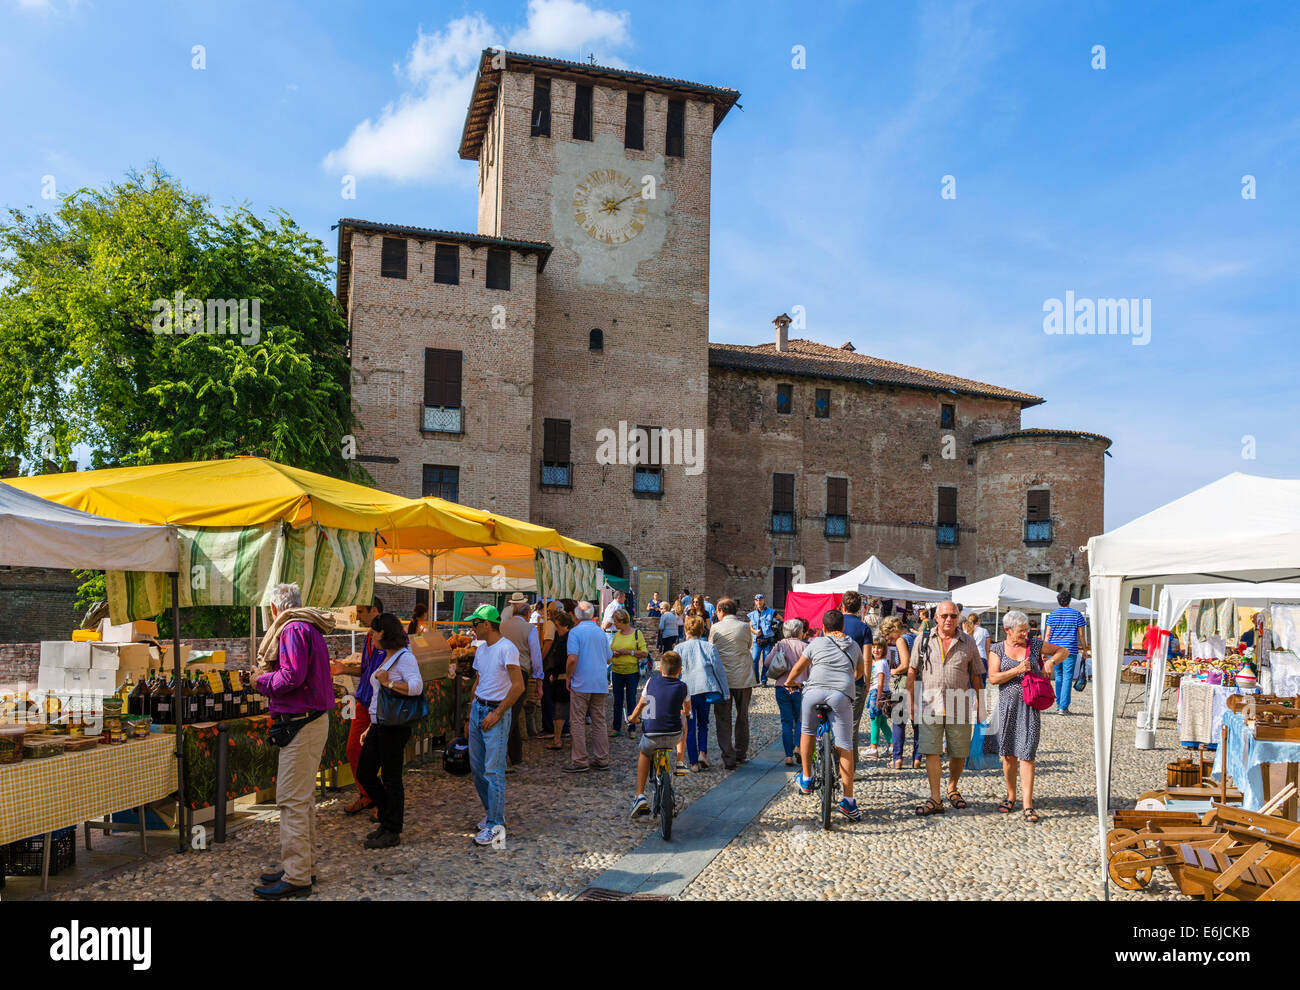 Mercato di domenica nella parte anteriore del castello Sanvitale (Rocca Sanvitale) nella storica città vecchia di Fontanellato, Parma, Emilia Romagna, Italia Foto Stock